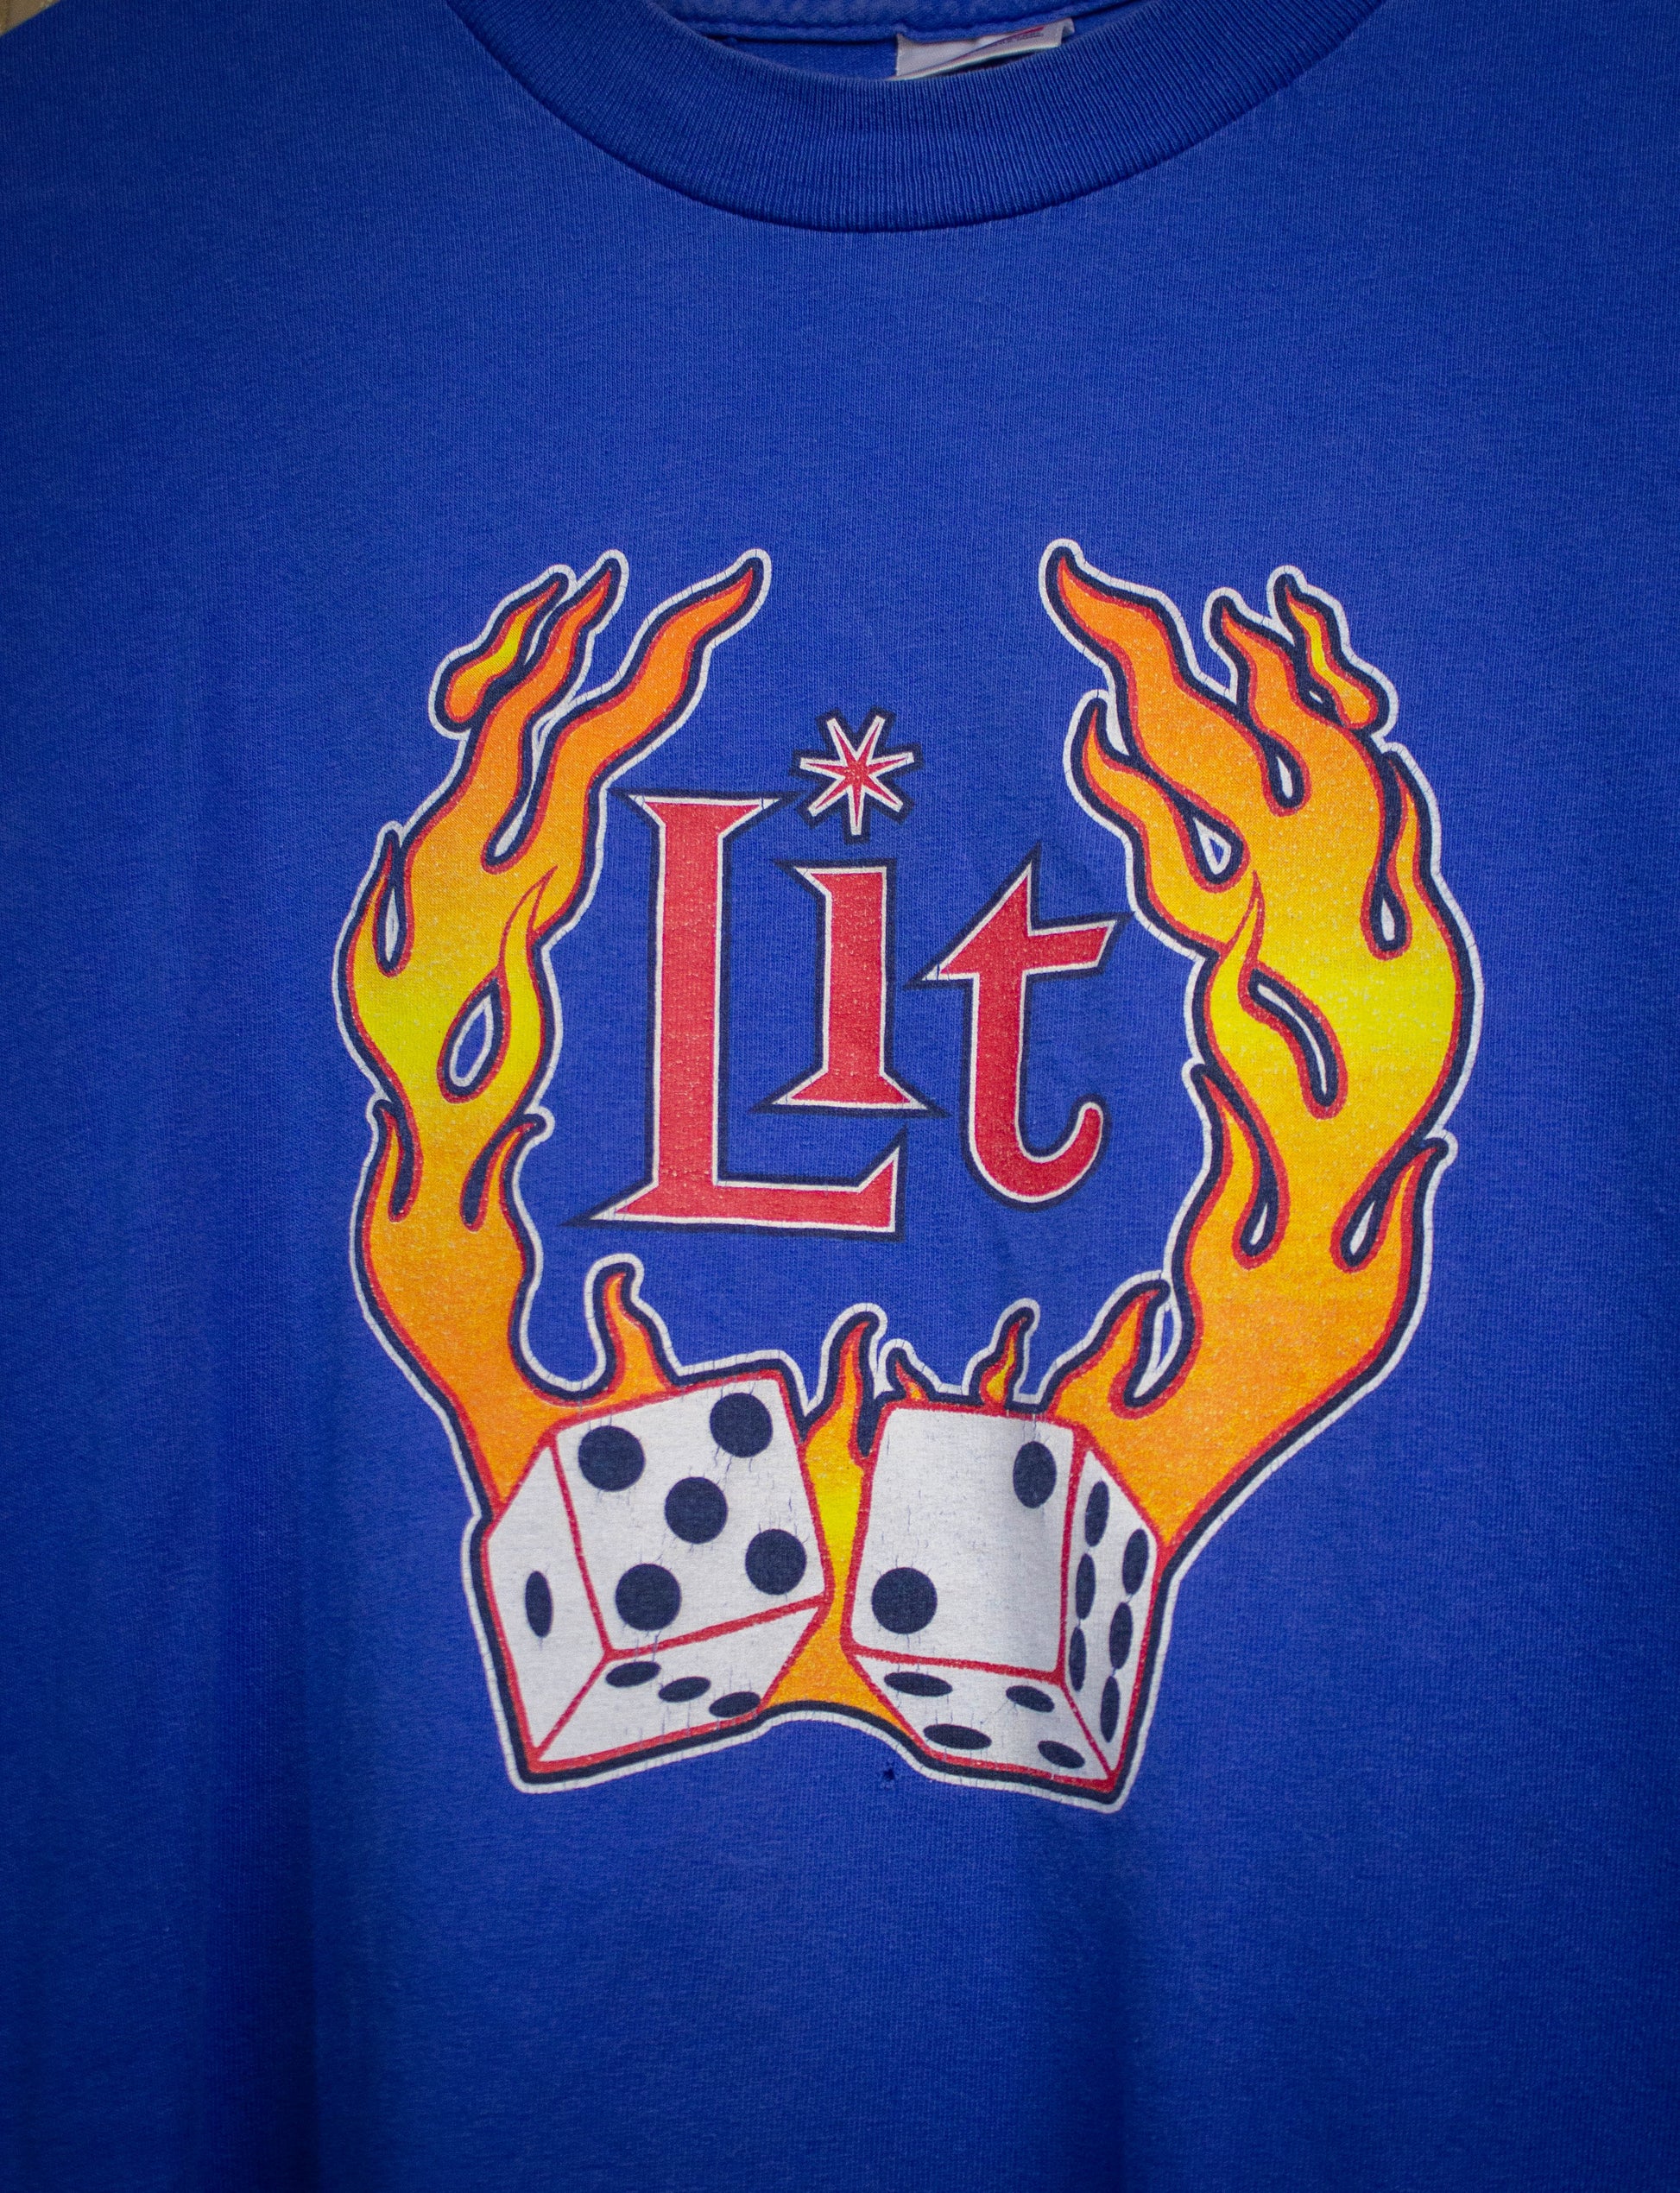 Vintage Lit North American Tour Concert T Shirt 90s Blue XL